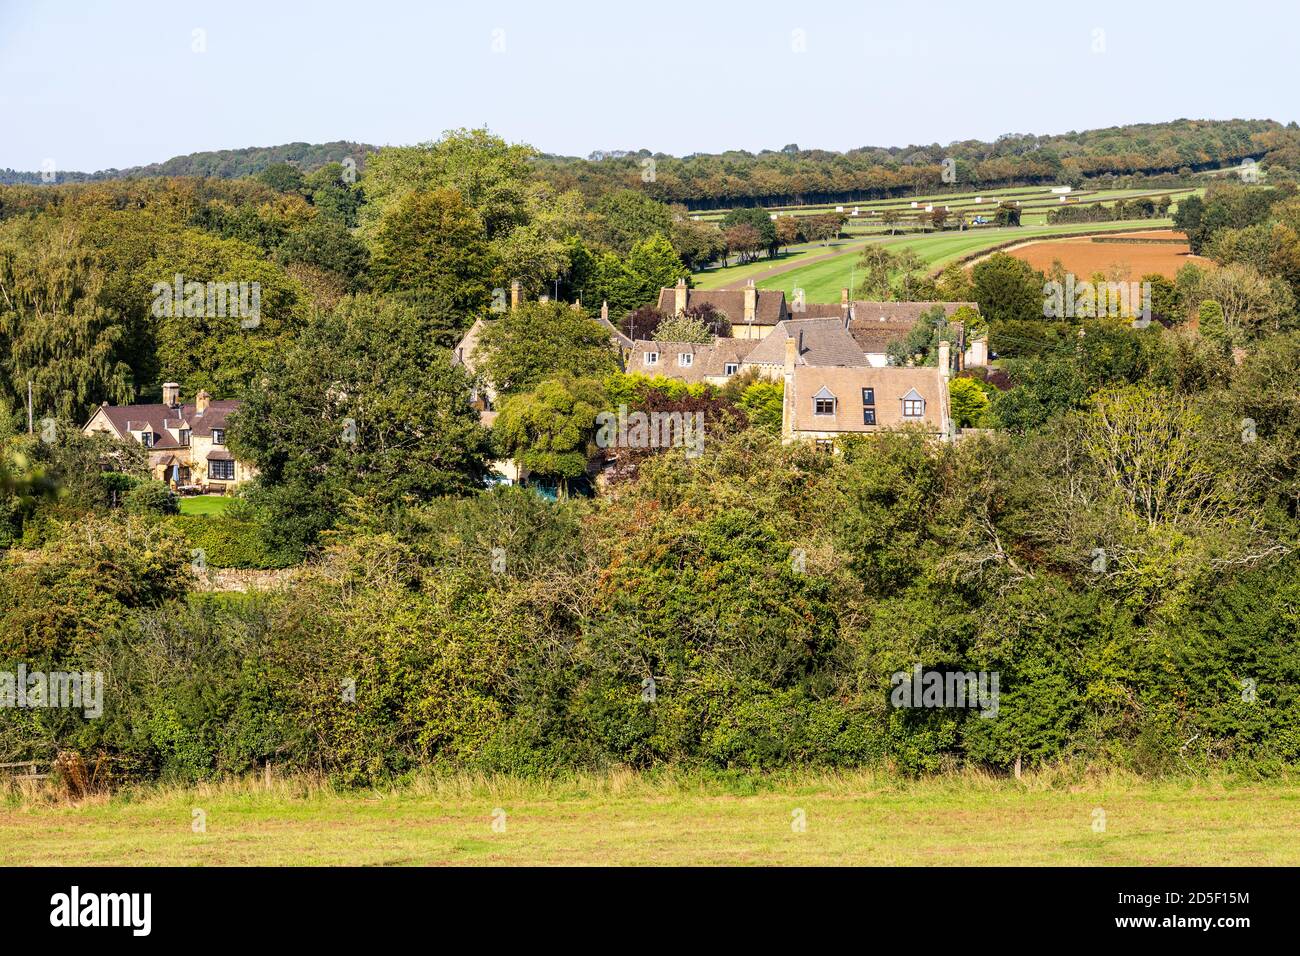 Das Cotswold-Dorf Ford, Gloucestershire, Großbritannien - in einer Gegend, die für ihre Rennställe berühmt ist und Heimat von Jonjo O’Neill’s Jackdaws Castle ist Stockfoto